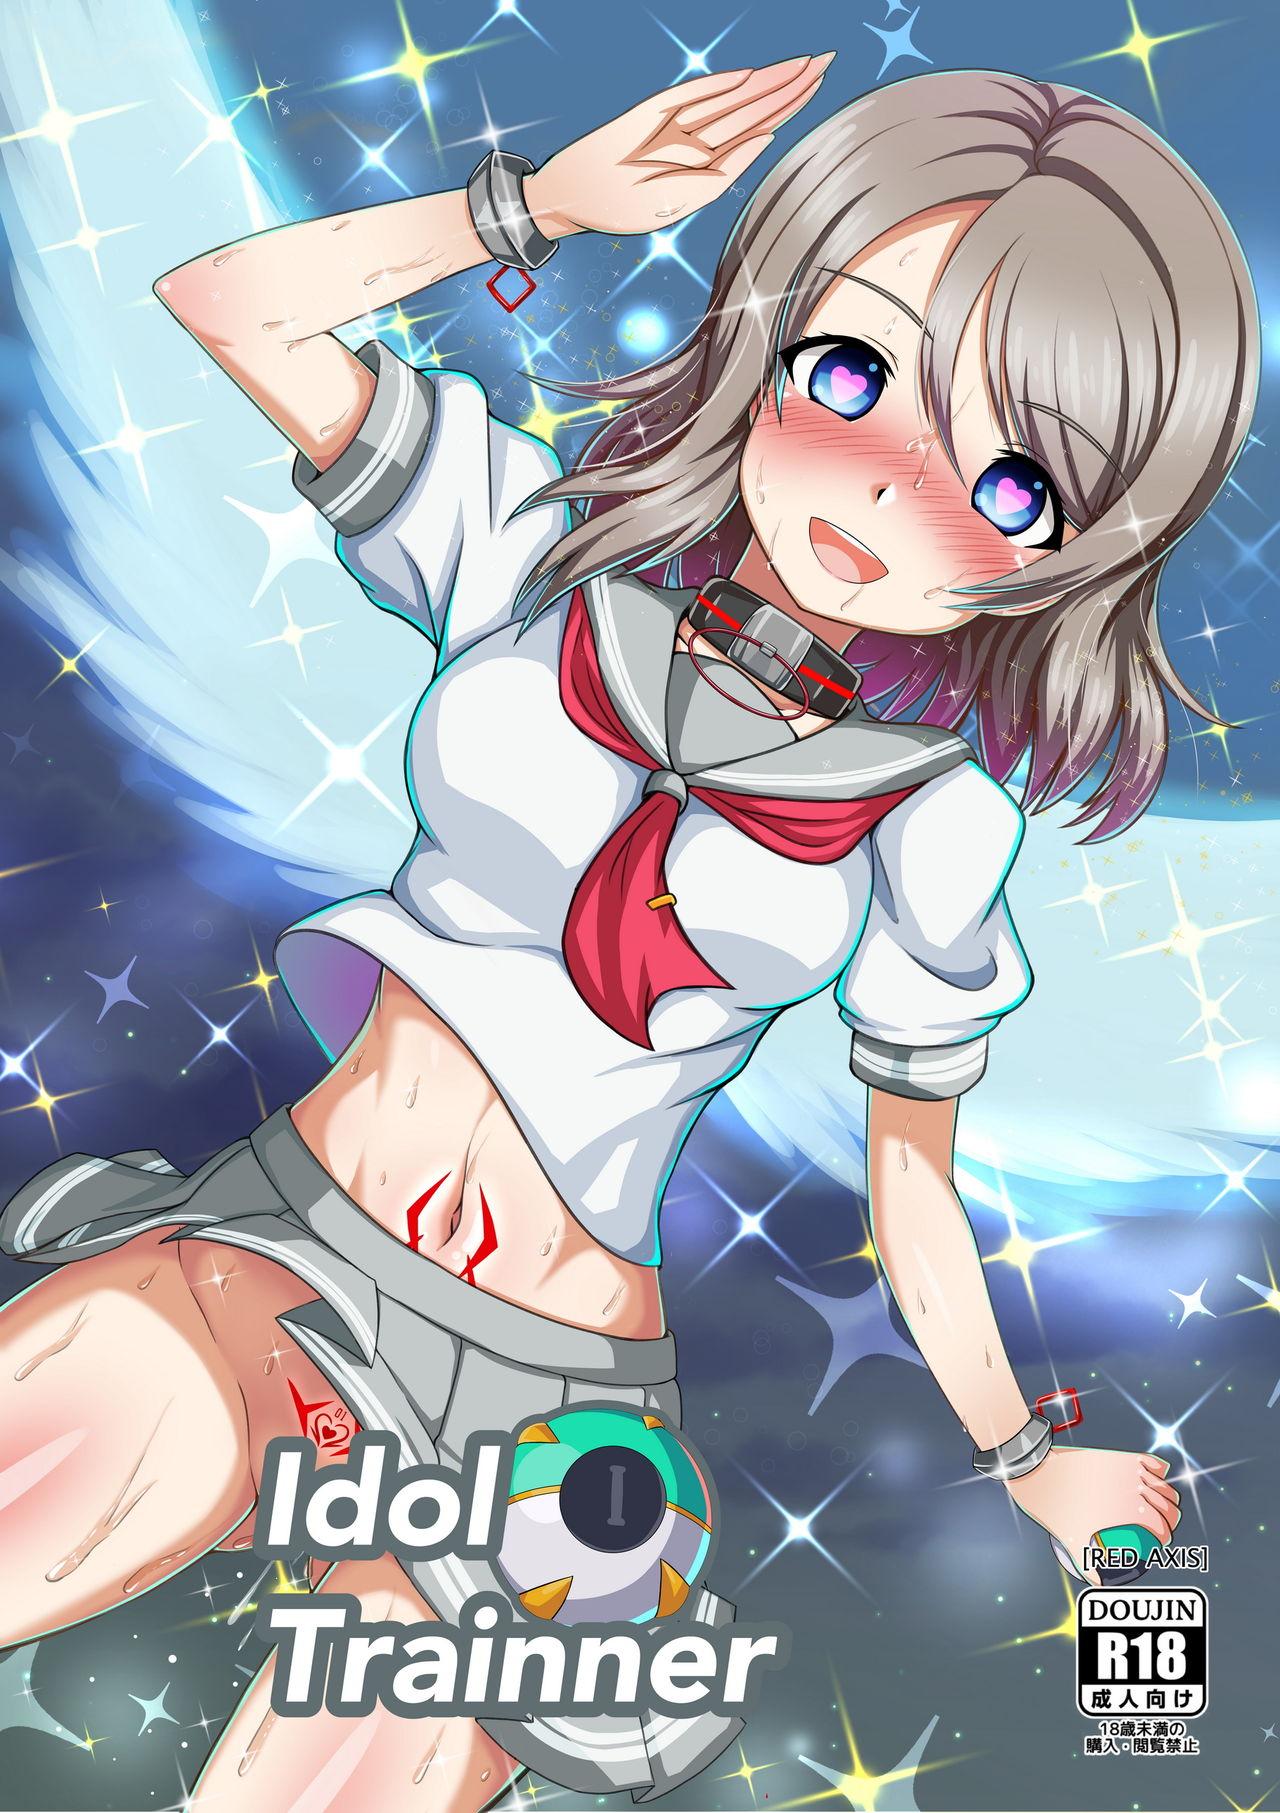 Idol Trainner 0